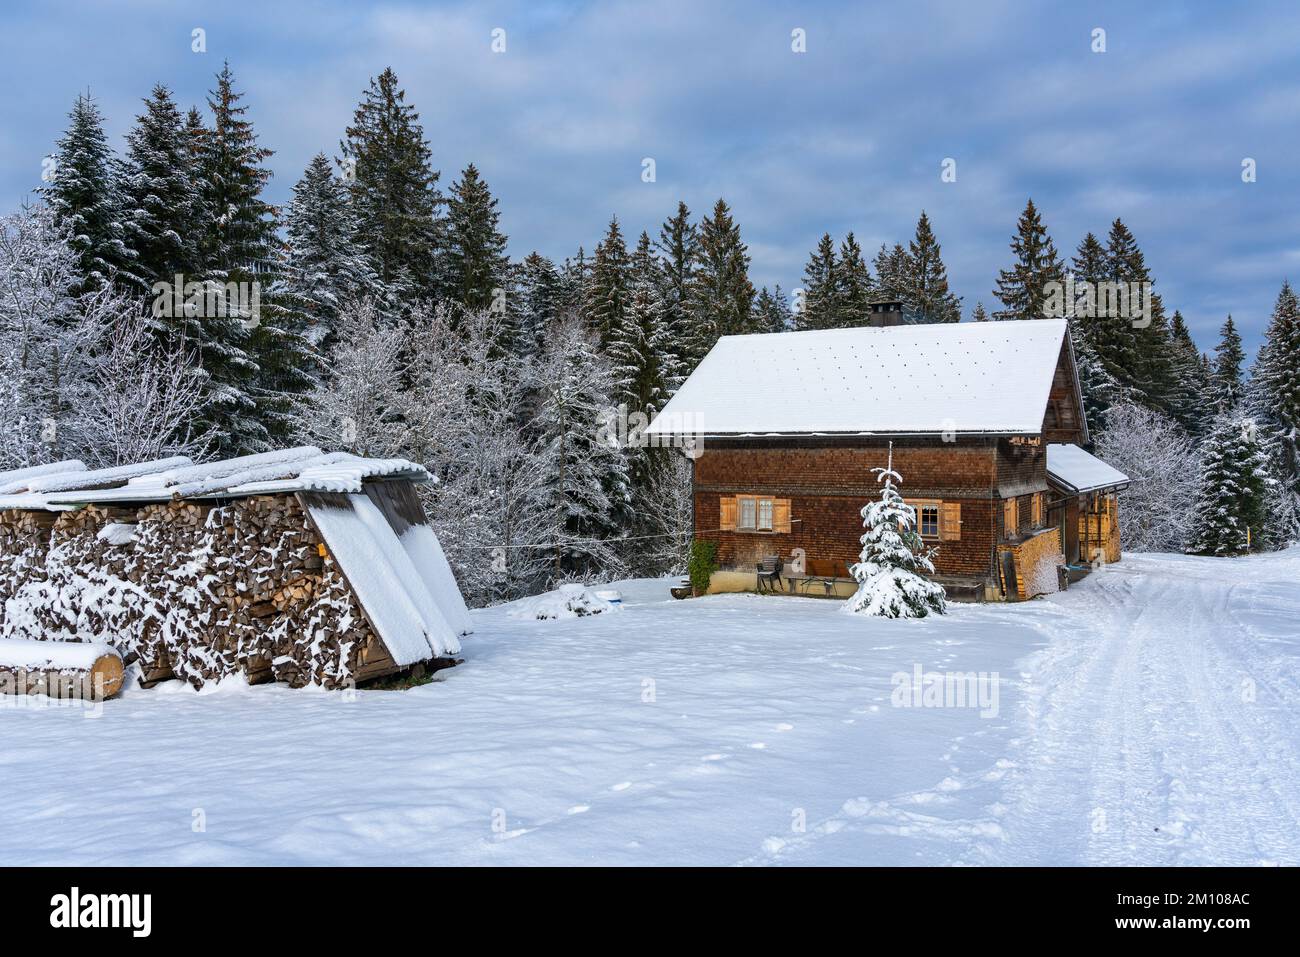 Holzhaus, Ferienhaus am Waldrand auf dem Hügel im ersten Schnee, verschneite Landschaft mit weißen Wiesen und Bäumen. Avent und Weihnachtszeit Ferien Foto Stock